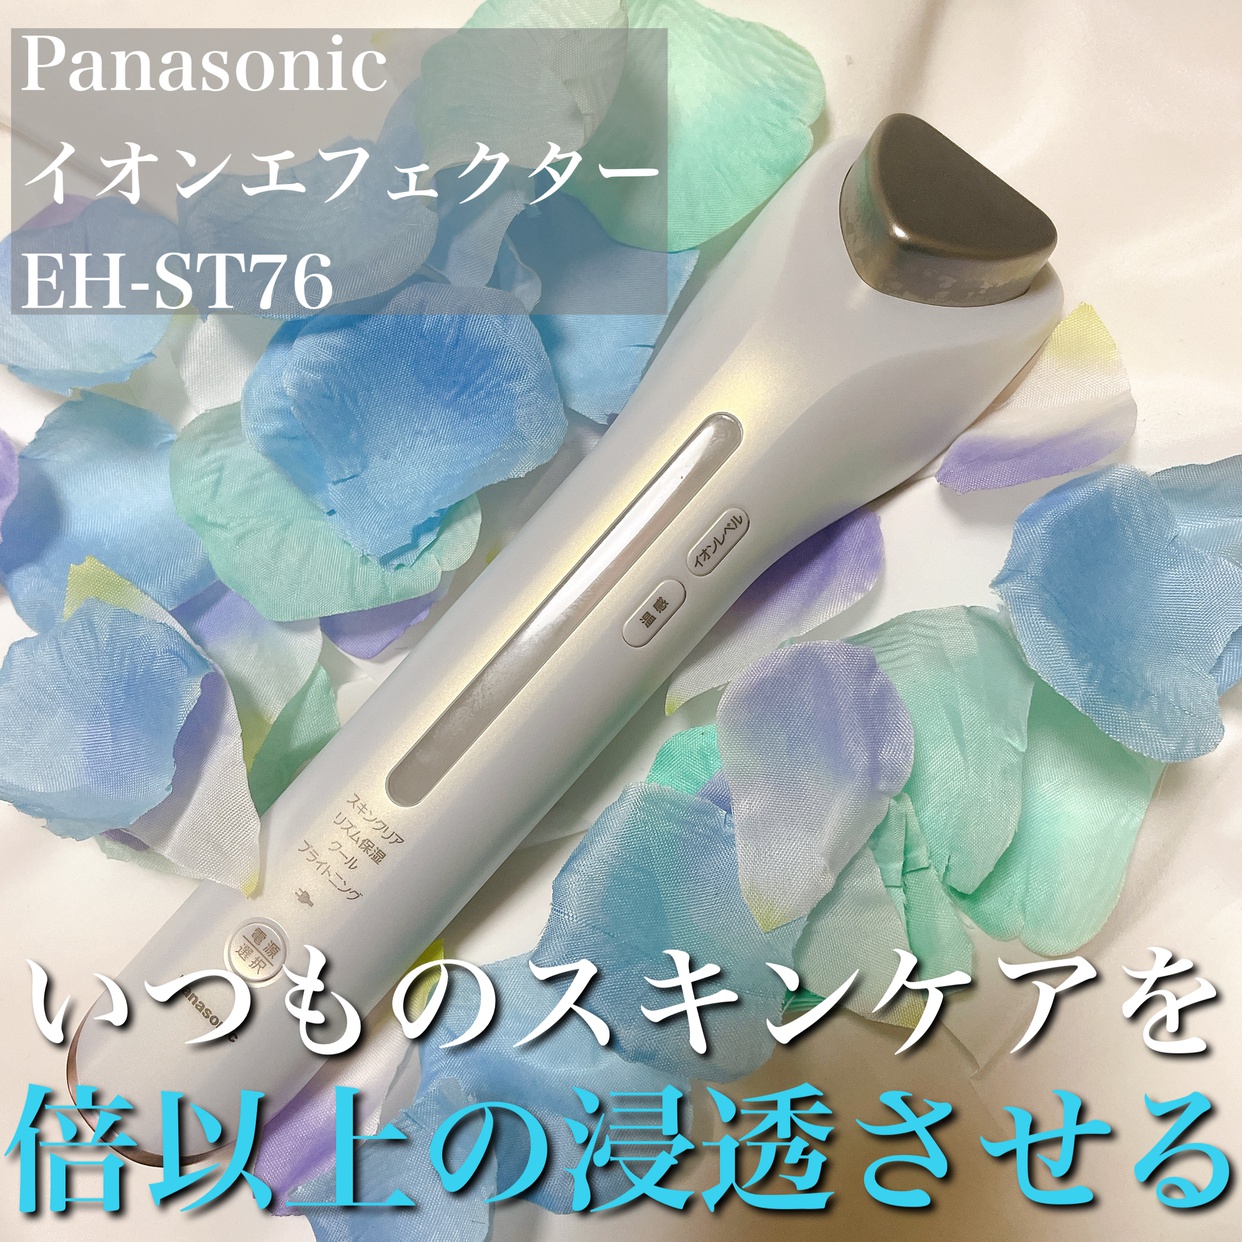 Panasonic(パナソニック) イオンエフェクター EH-ST78の良い点・メリットに関するここあさんの口コミ画像1